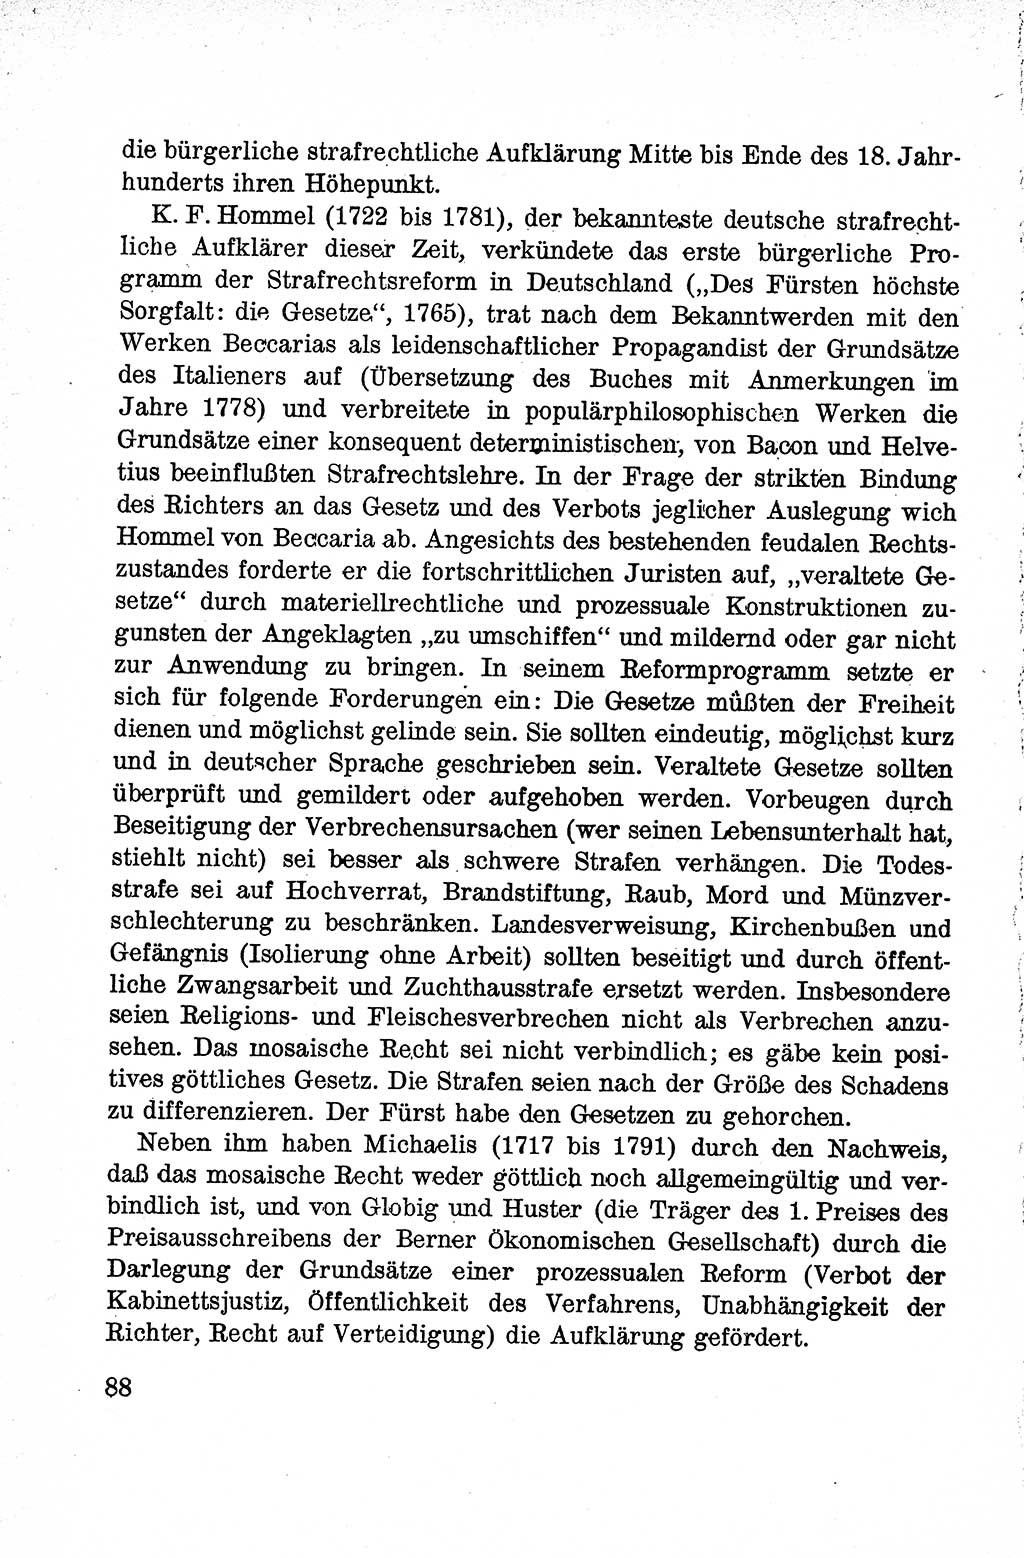 Lehrbuch des Strafrechts der Deutschen Demokratischen Republik (DDR), Allgemeiner Teil 1959, Seite 88 (Lb. Strafr. DDR AT 1959, S. 88)